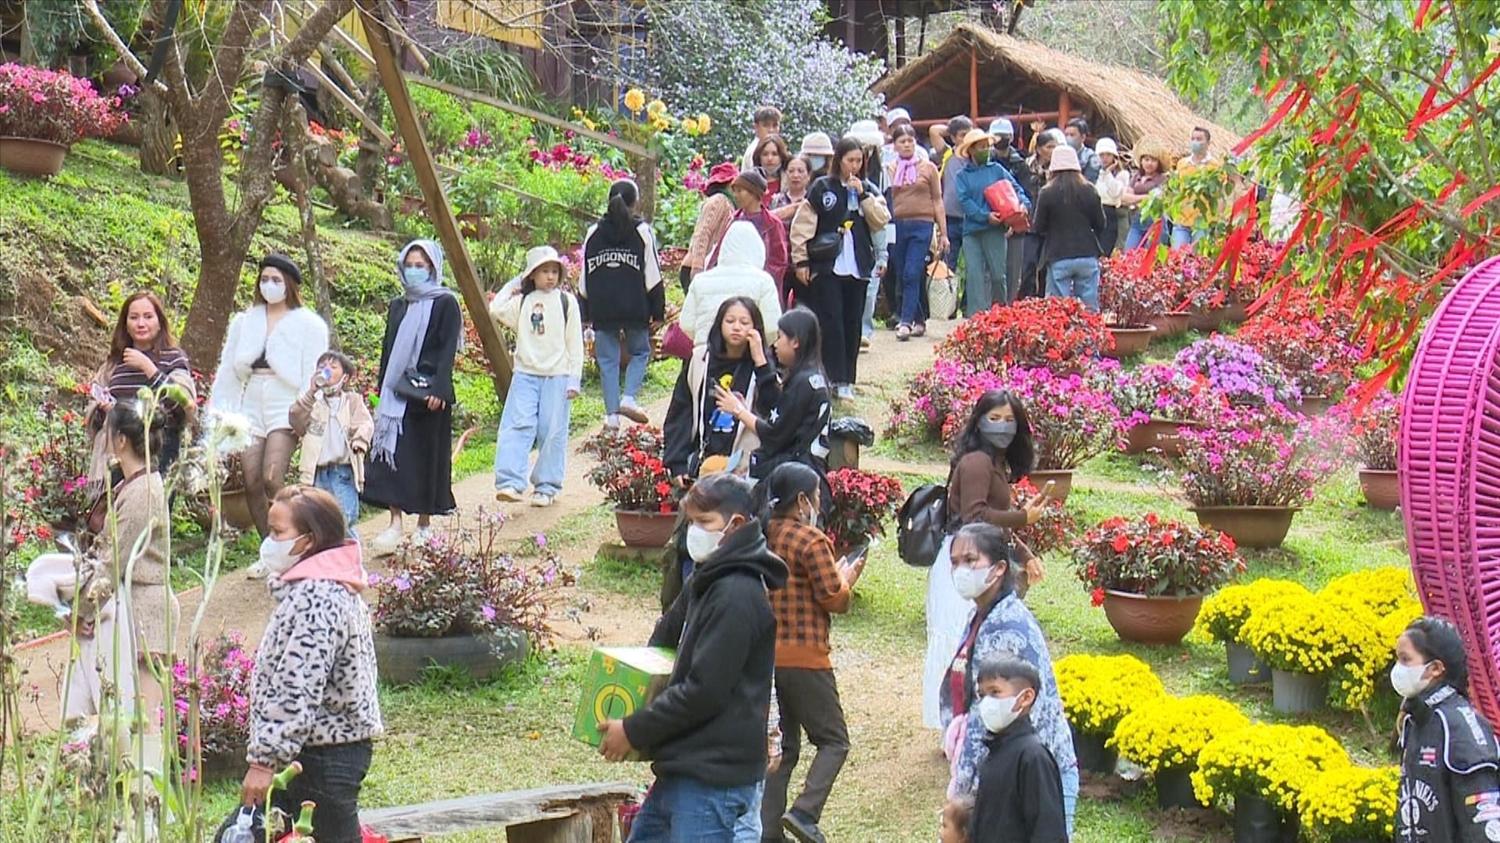 Hàng ngàn du khách đến với Măng Đen trong ngày mùng 4 Tết